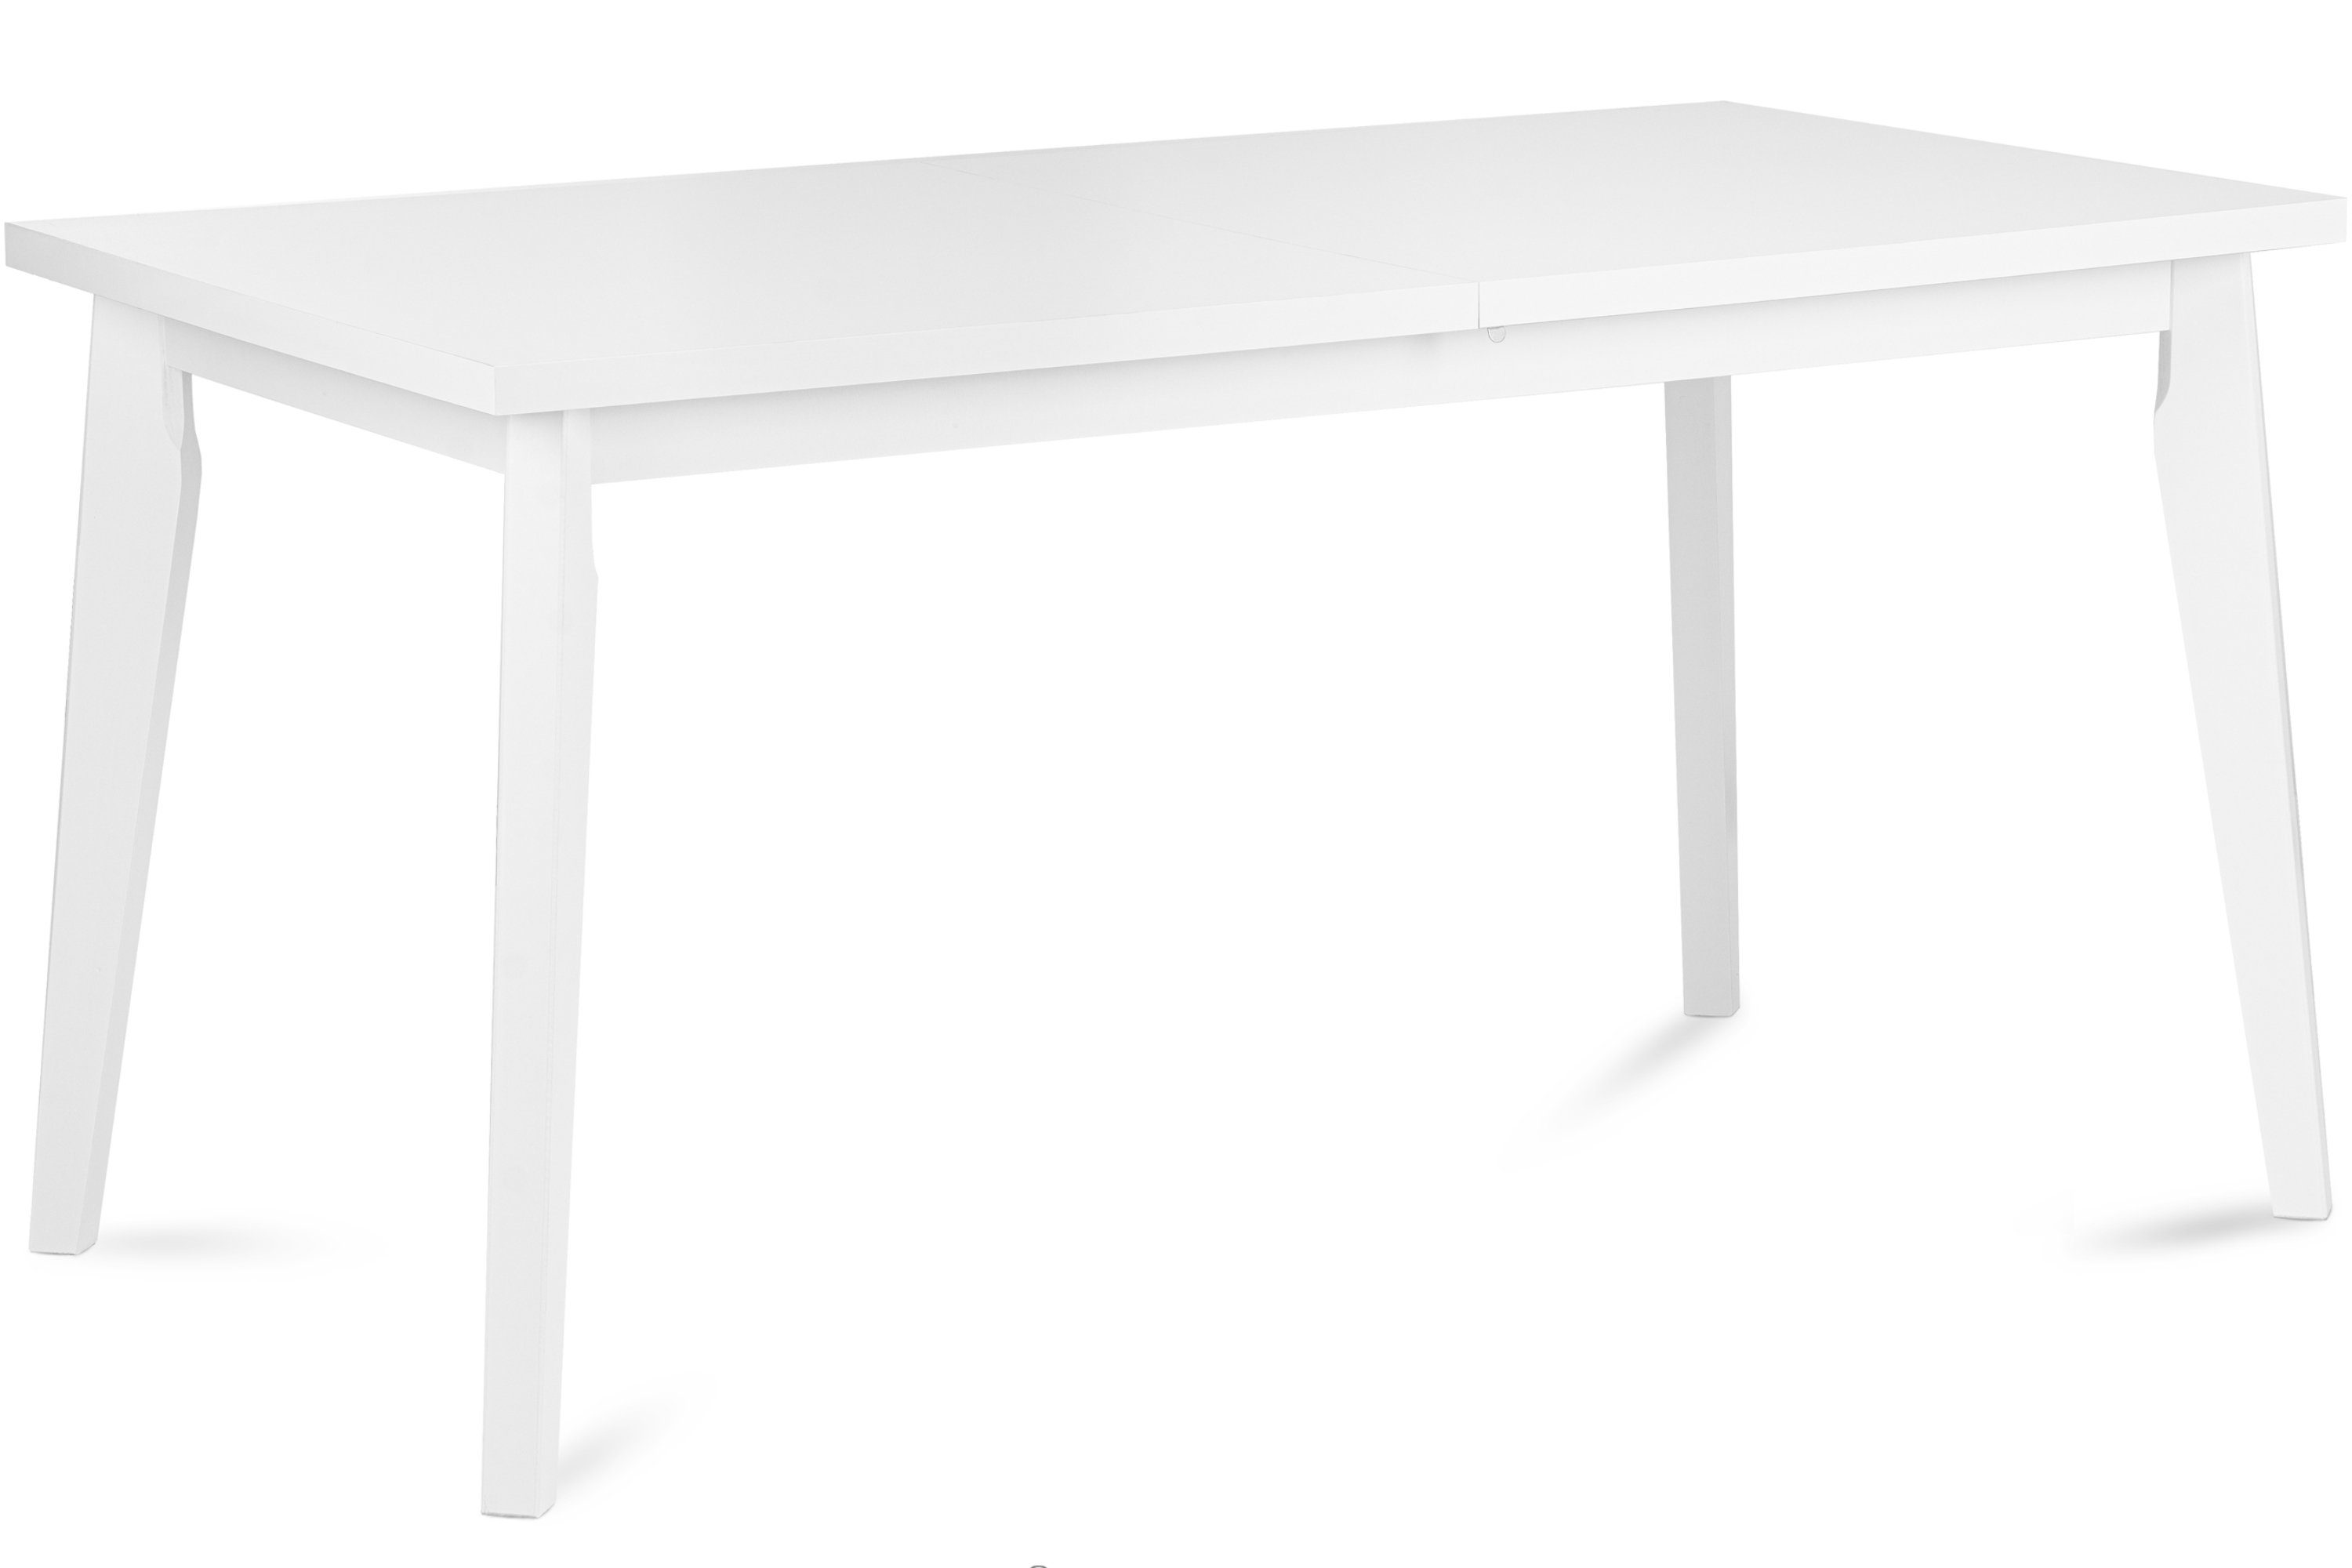 Konsimo Esstisch RHENA Esszimmertisch Küchentisch 150x80cm, ausziehbar bis 190cm, rechteckig weiß | weiß | weiß | Esstische